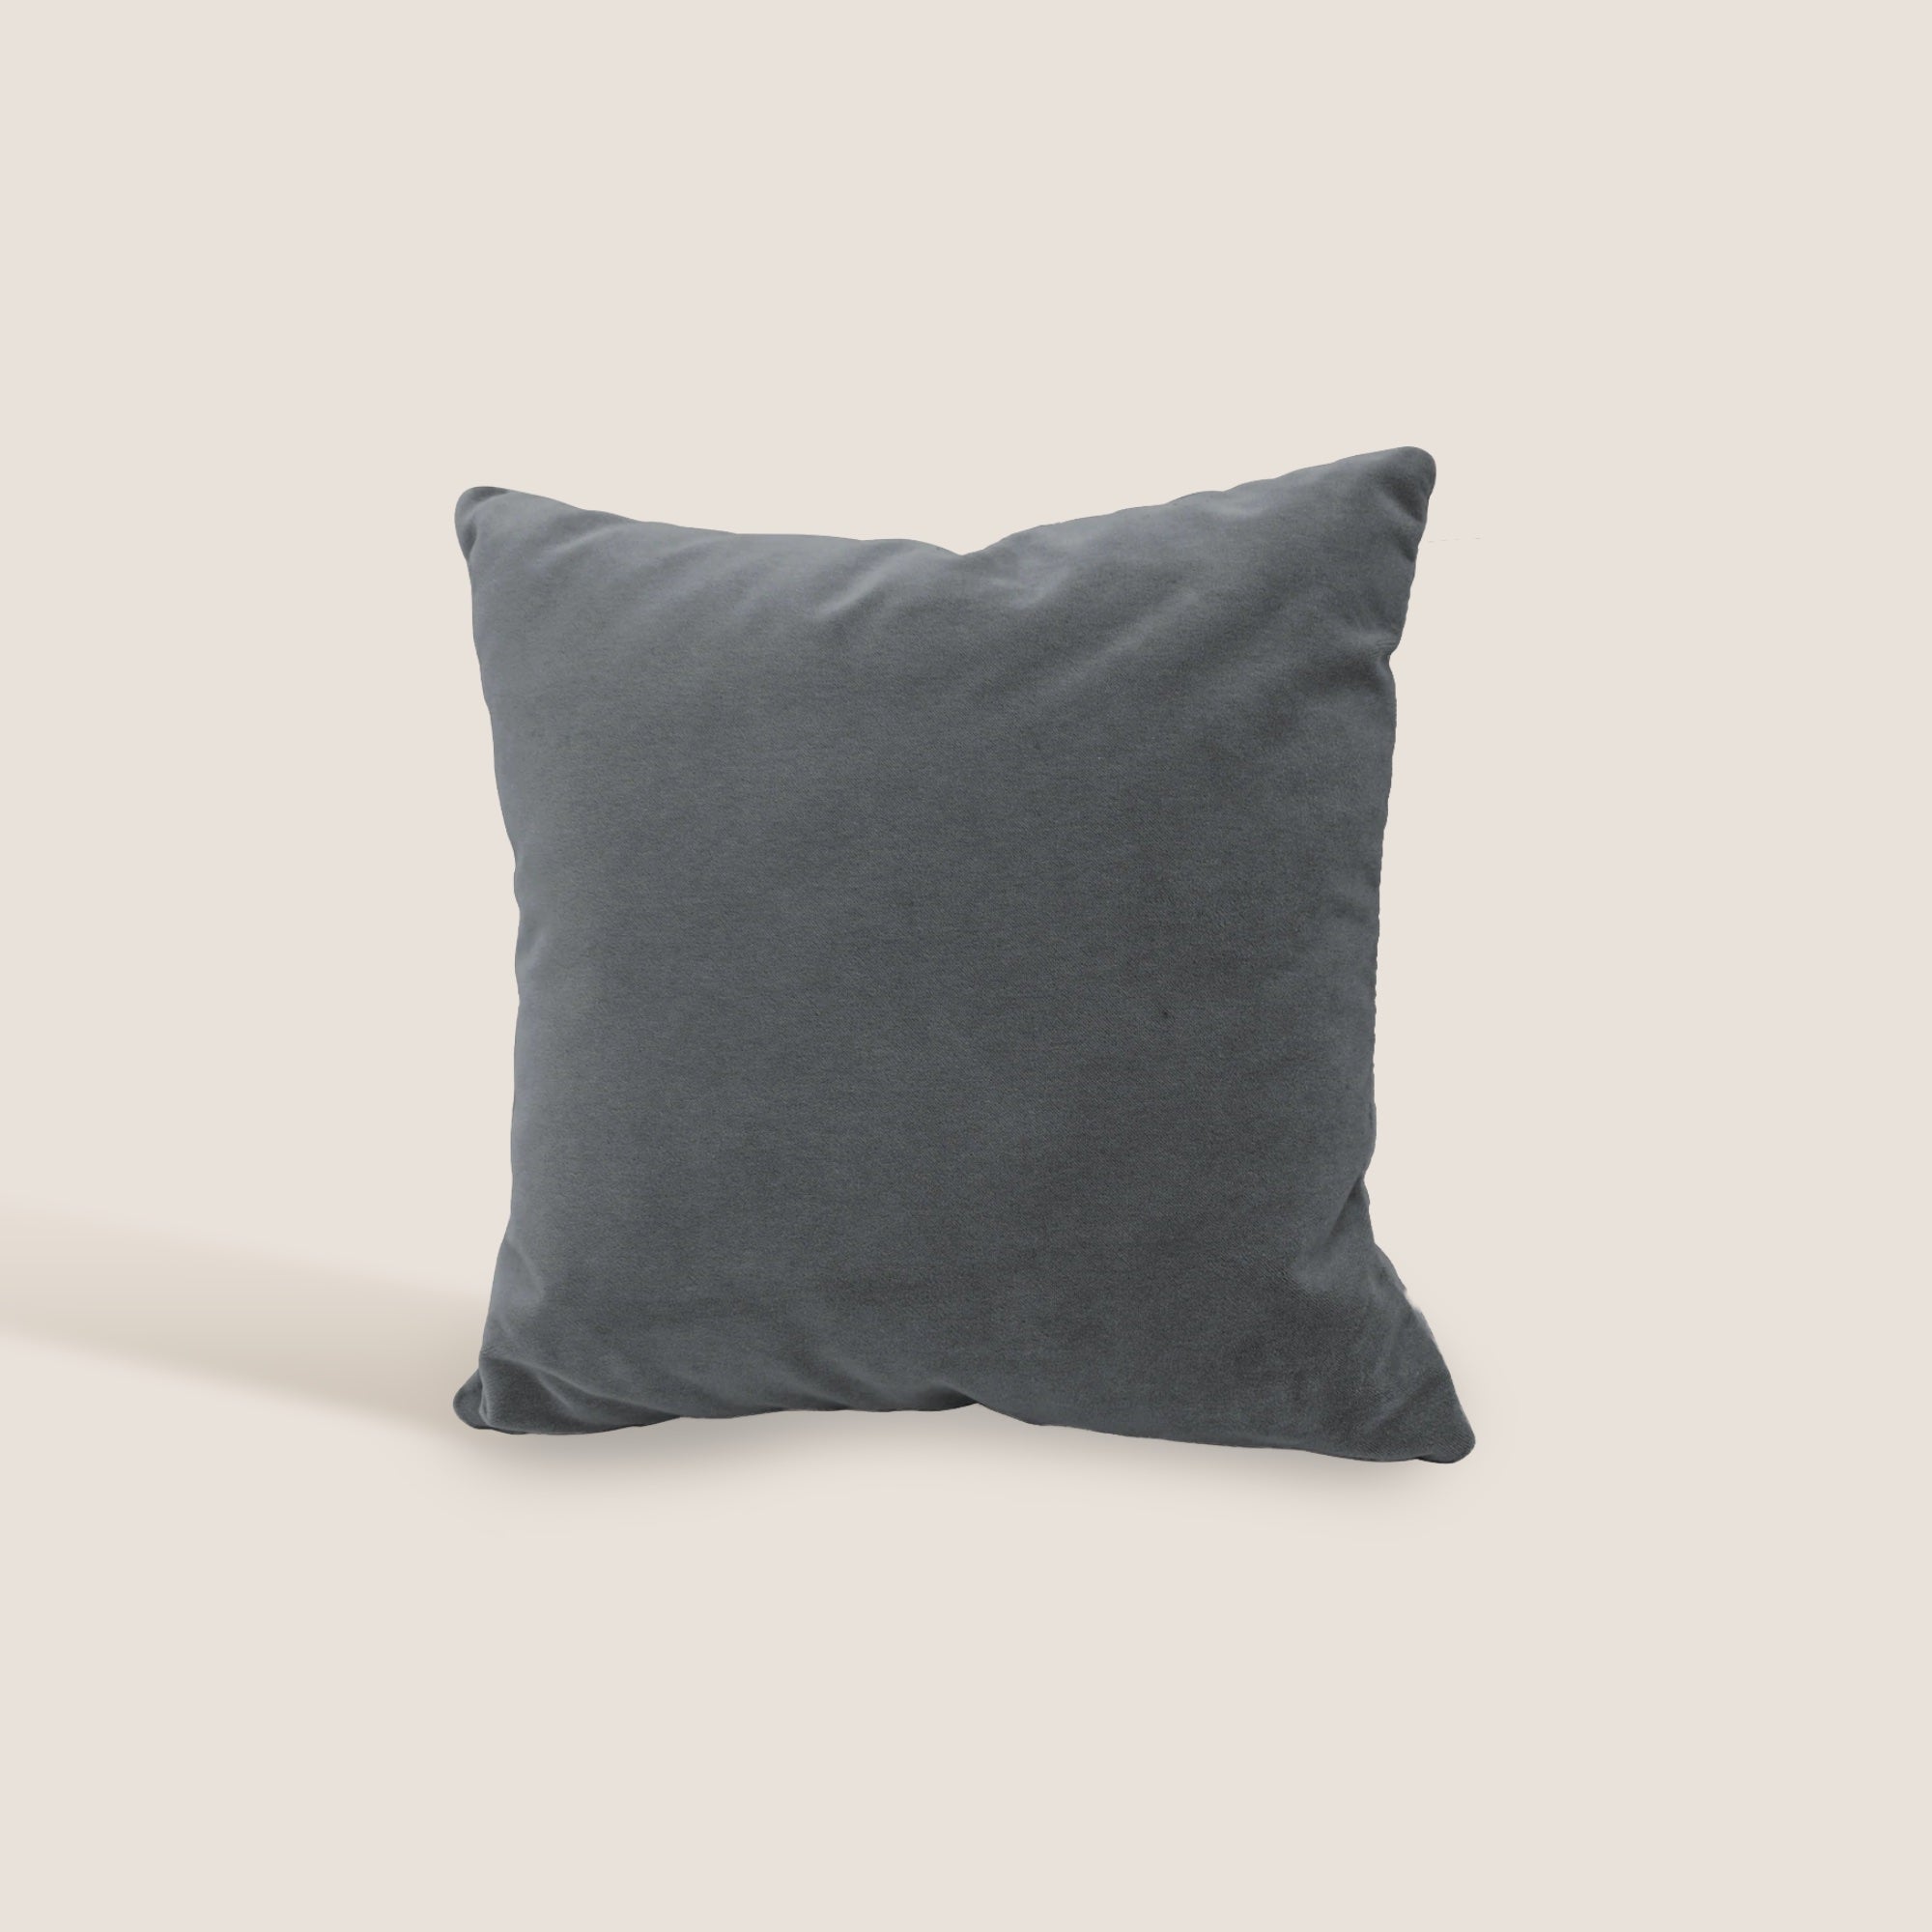 Luxury cuscino quadrato in velluto misto cotone T09 disponibile in diversi colori